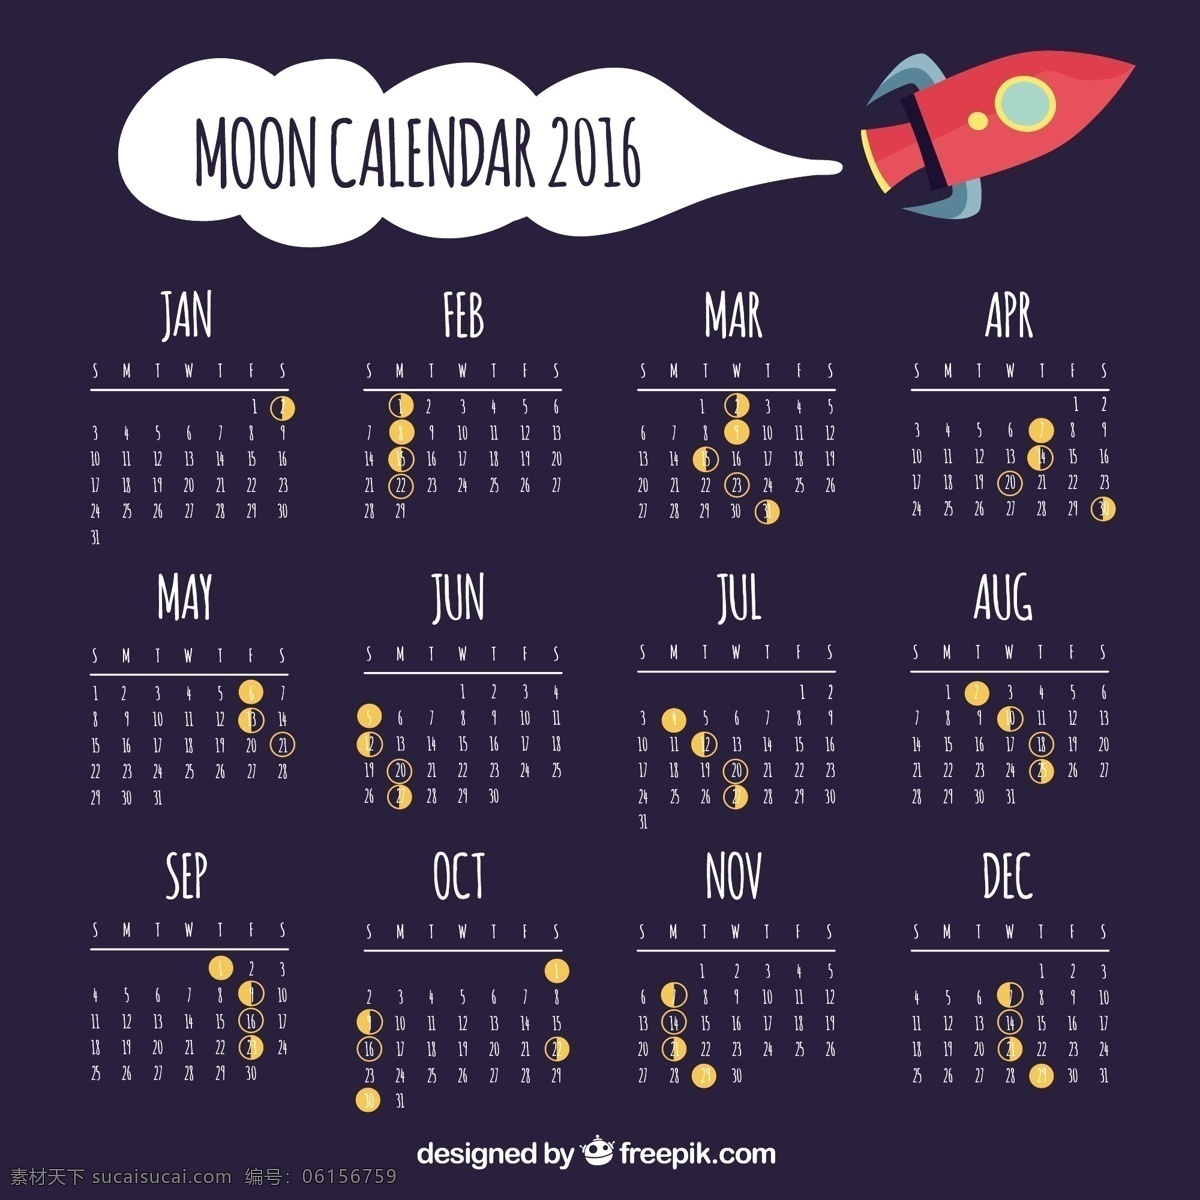 太空船月历 日历 模板 纸张 办公室 空间 月亮 数字 涂鸦 时间 船 夜晚 时间表 议程 日期 计划者 夜空 宇宙 日记 简单 年